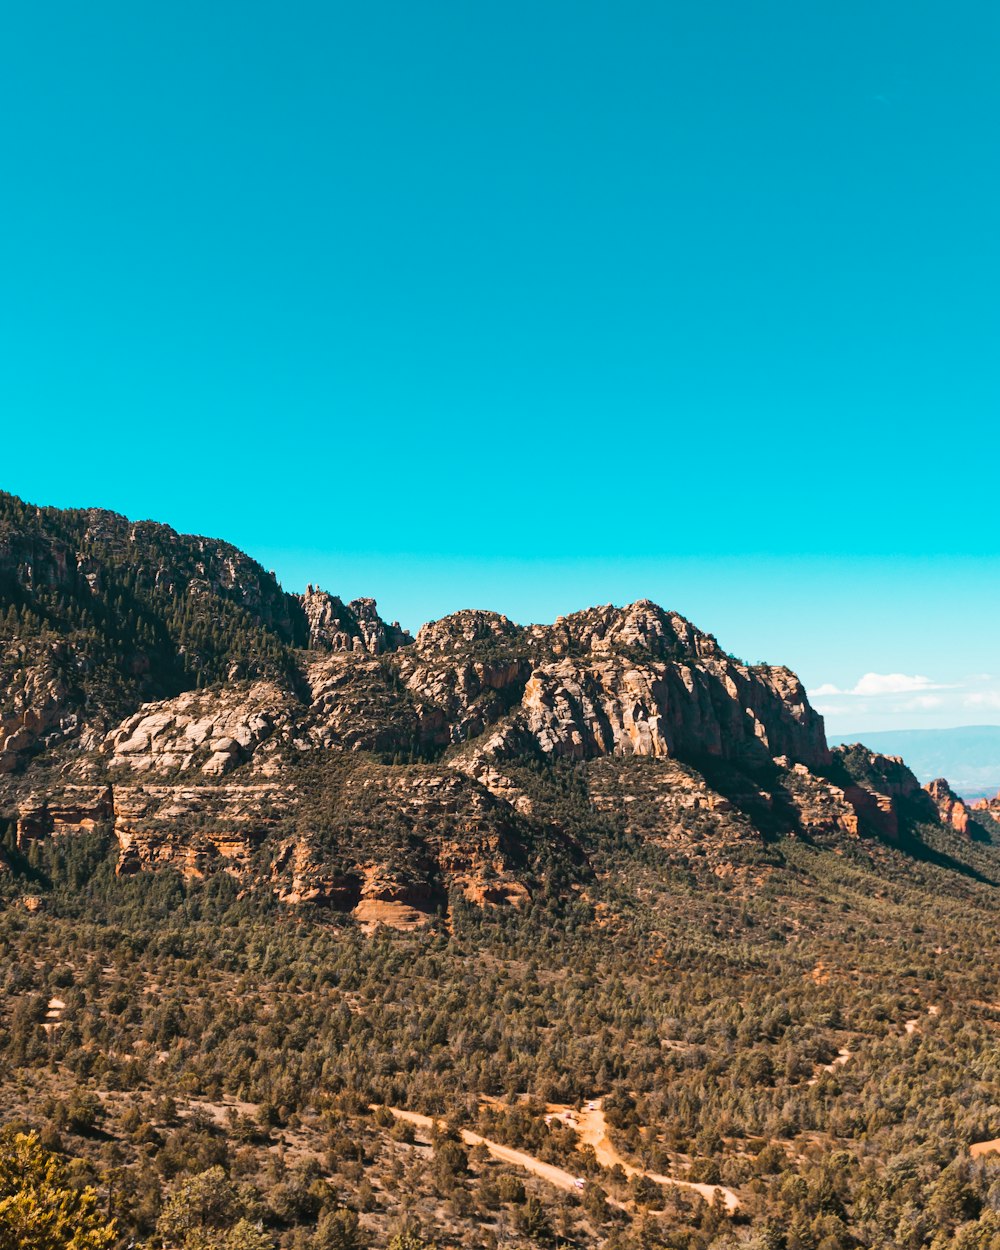 Ein malerischer Blick auf eine Bergkette mit einem klaren blauen Himmel